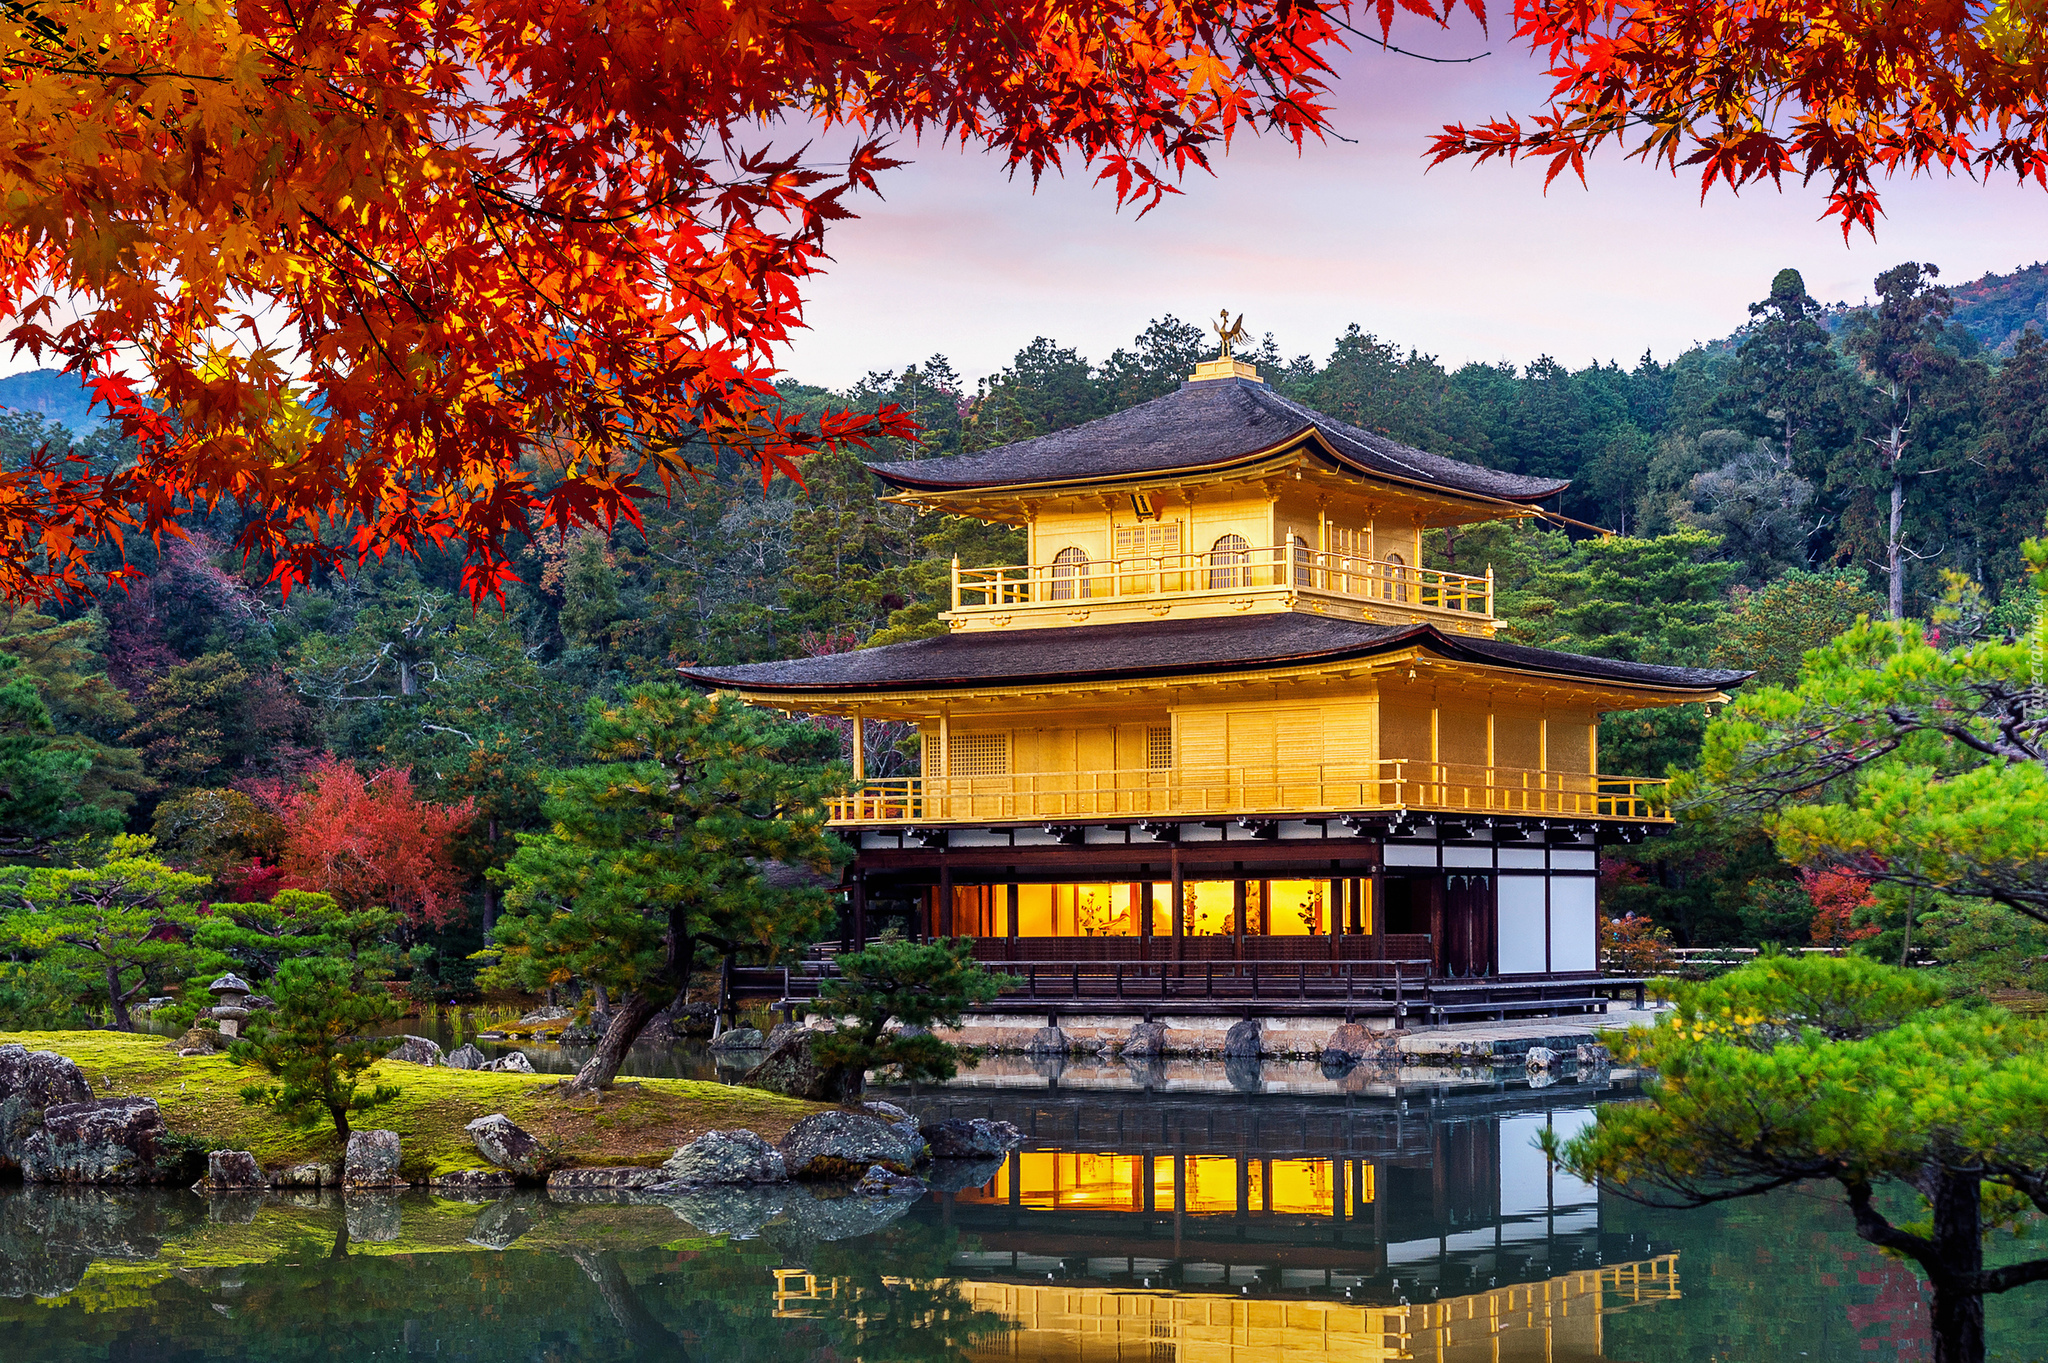 Świątynia Kinkakuji, Złoty Pawilon, Staw Kyko chi, Liście, Drzewa, Kioto, Japonia